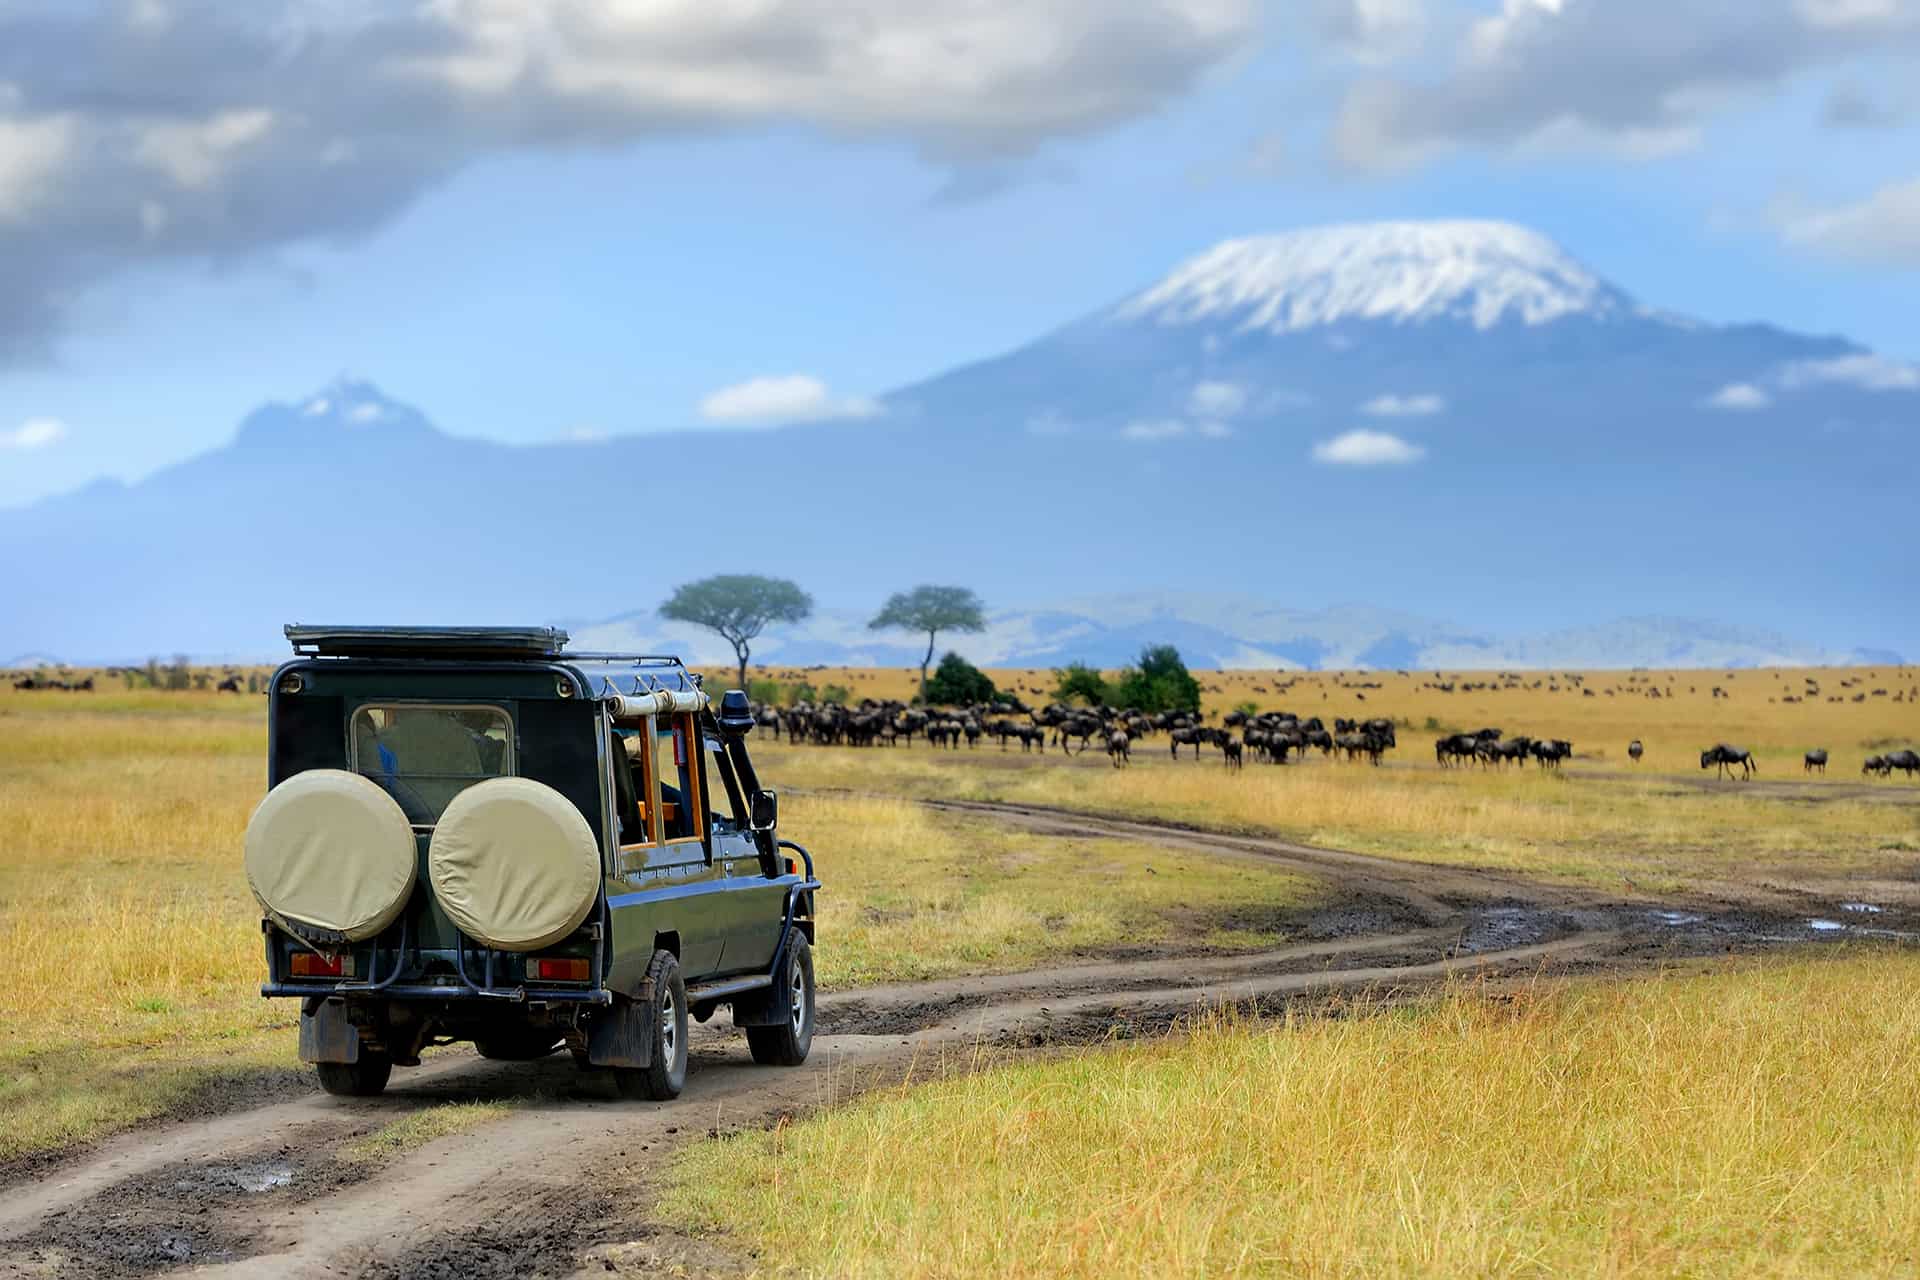 safari guide course kenya